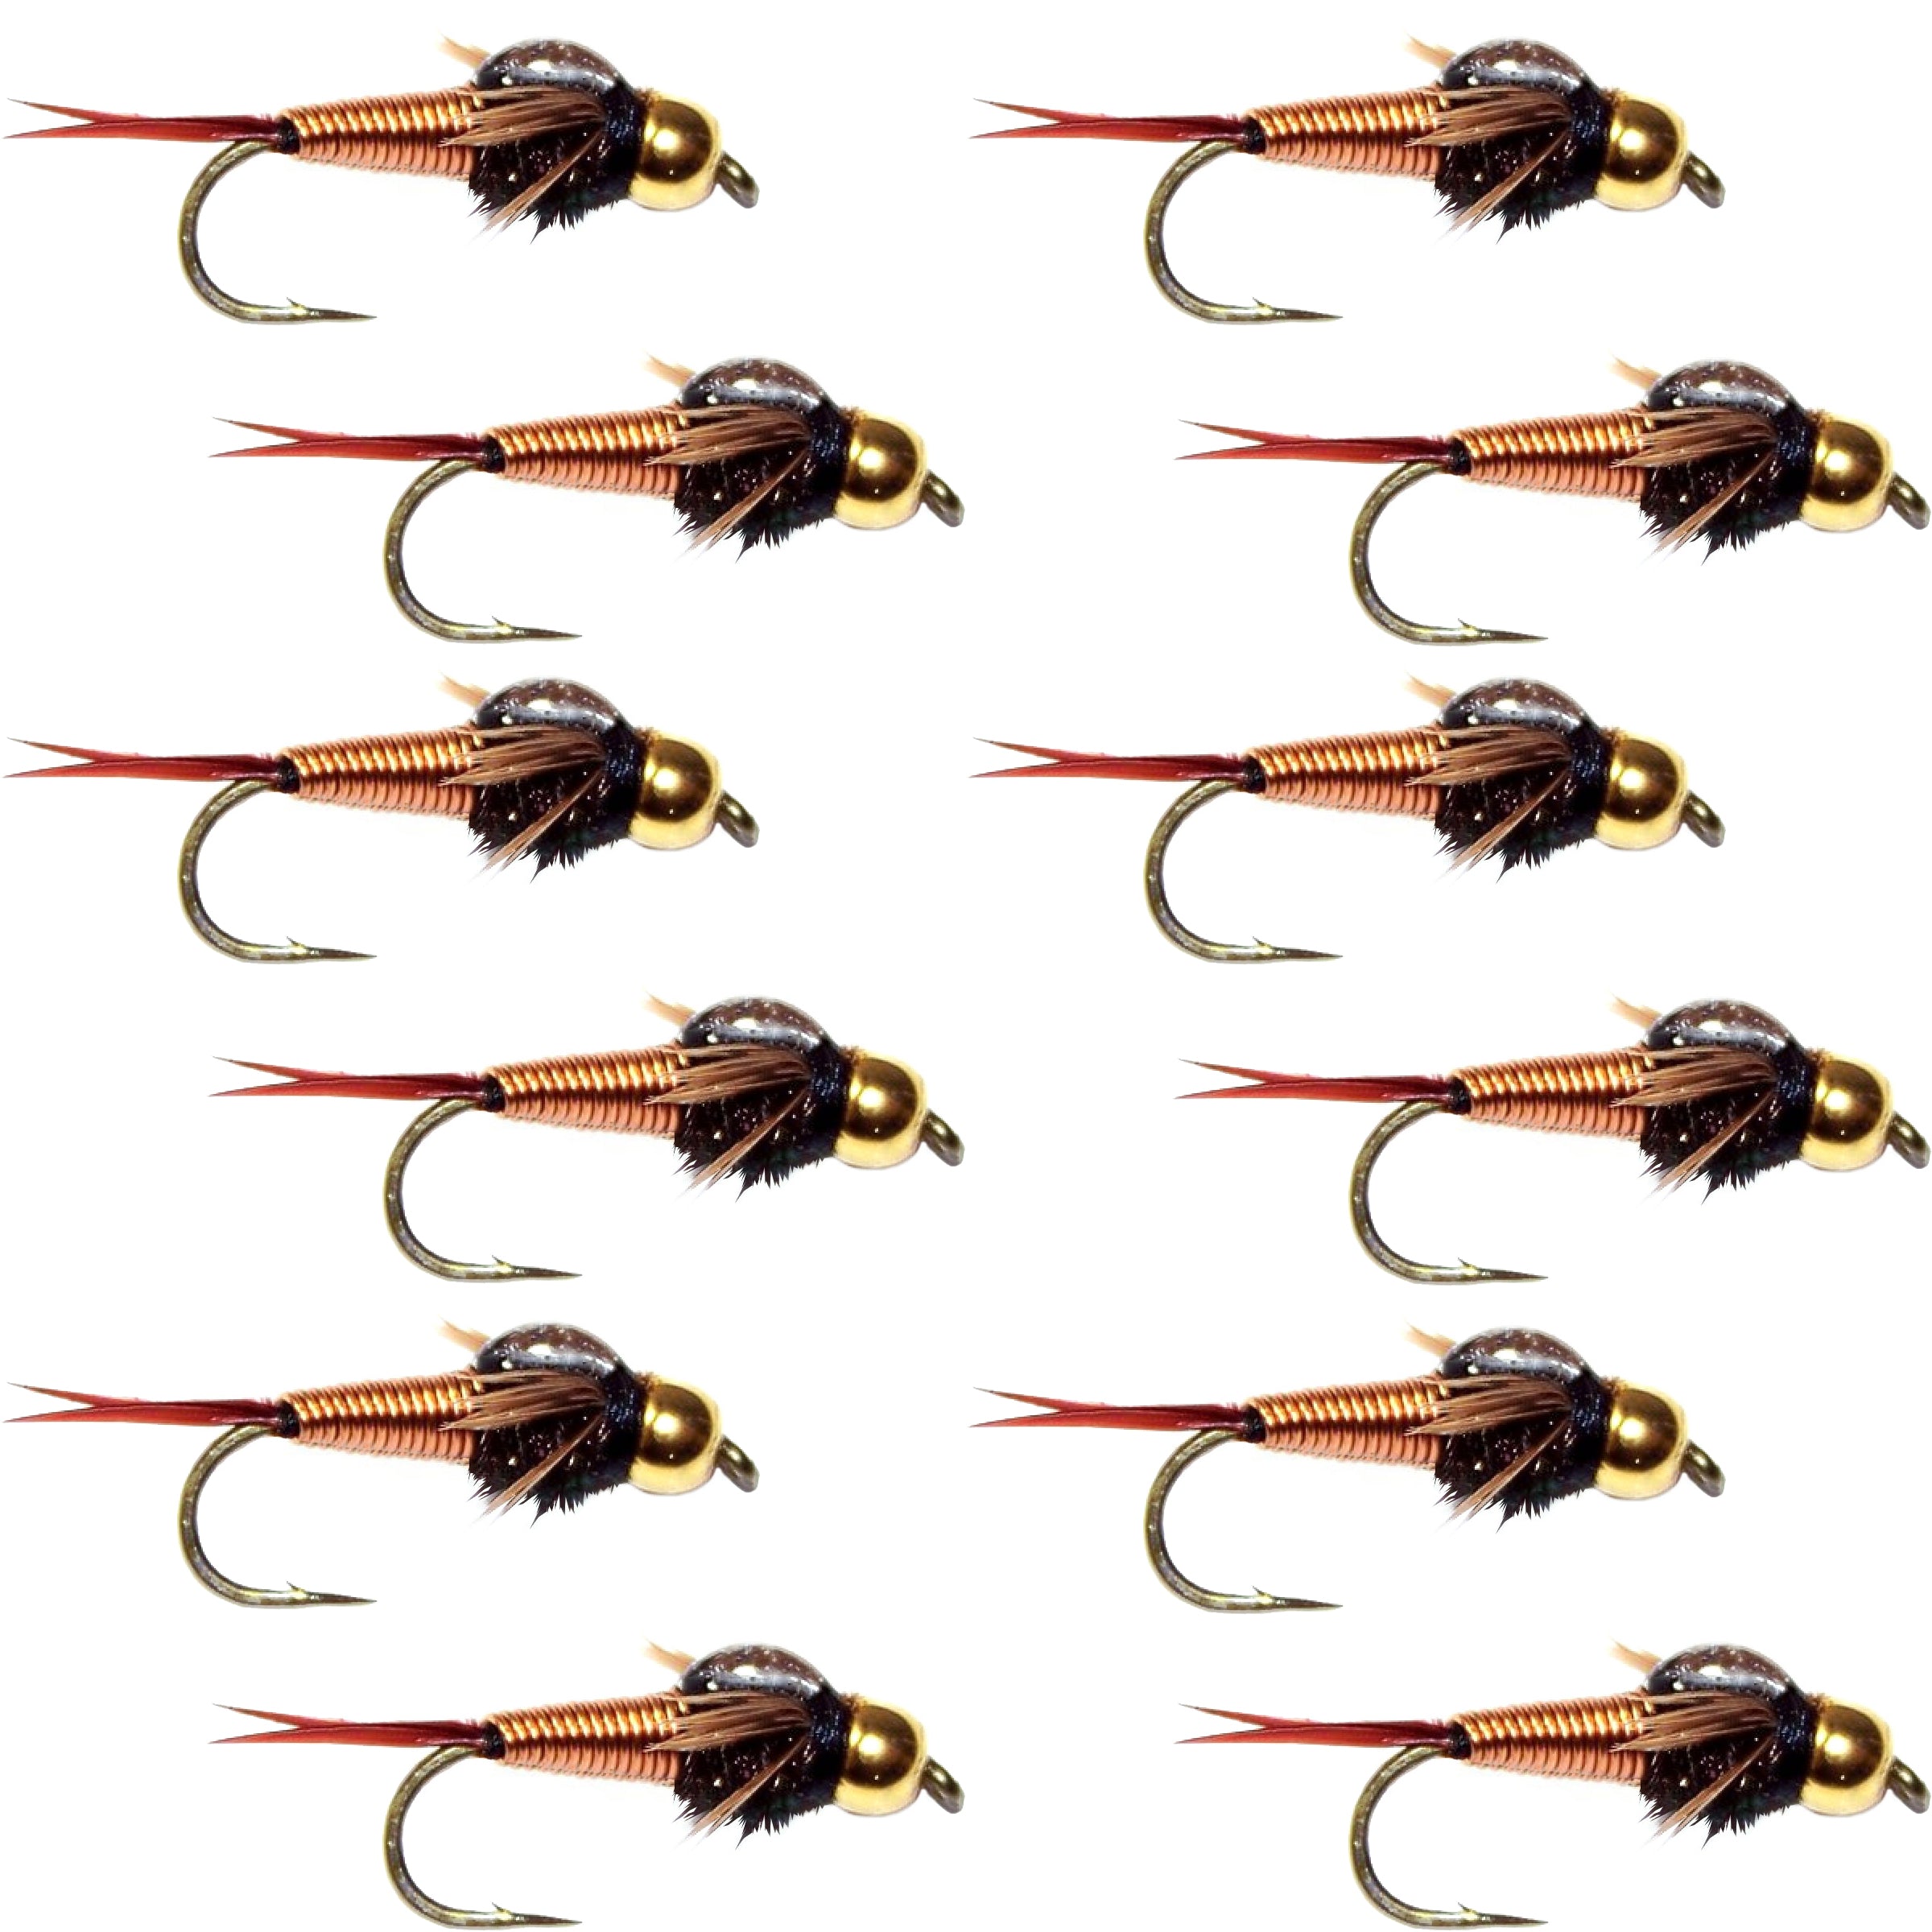 Bead Head Copper John Nymph 1 Dozen Fly Fishing Flies - Hook Size 16